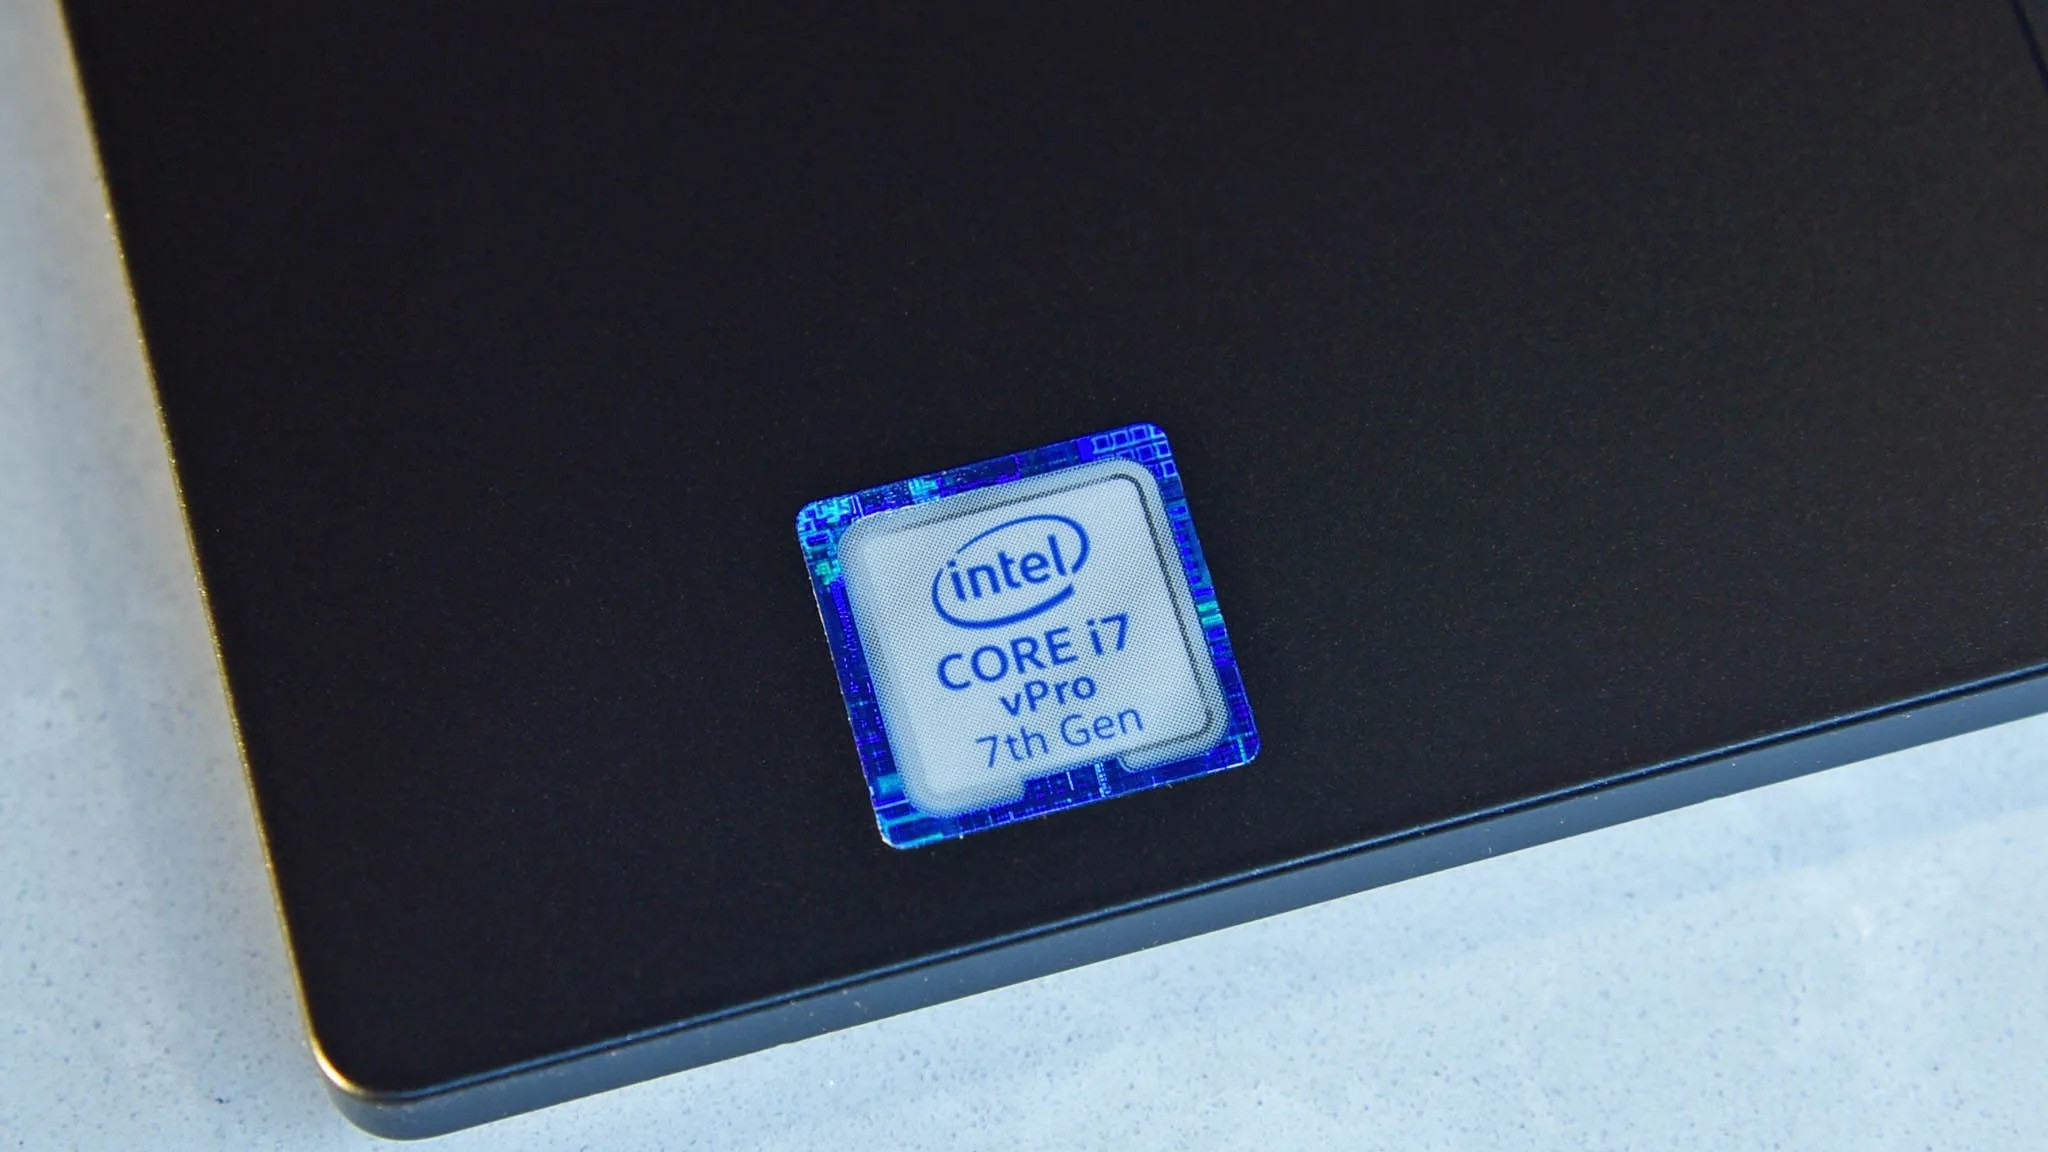 Intel vPro laptop